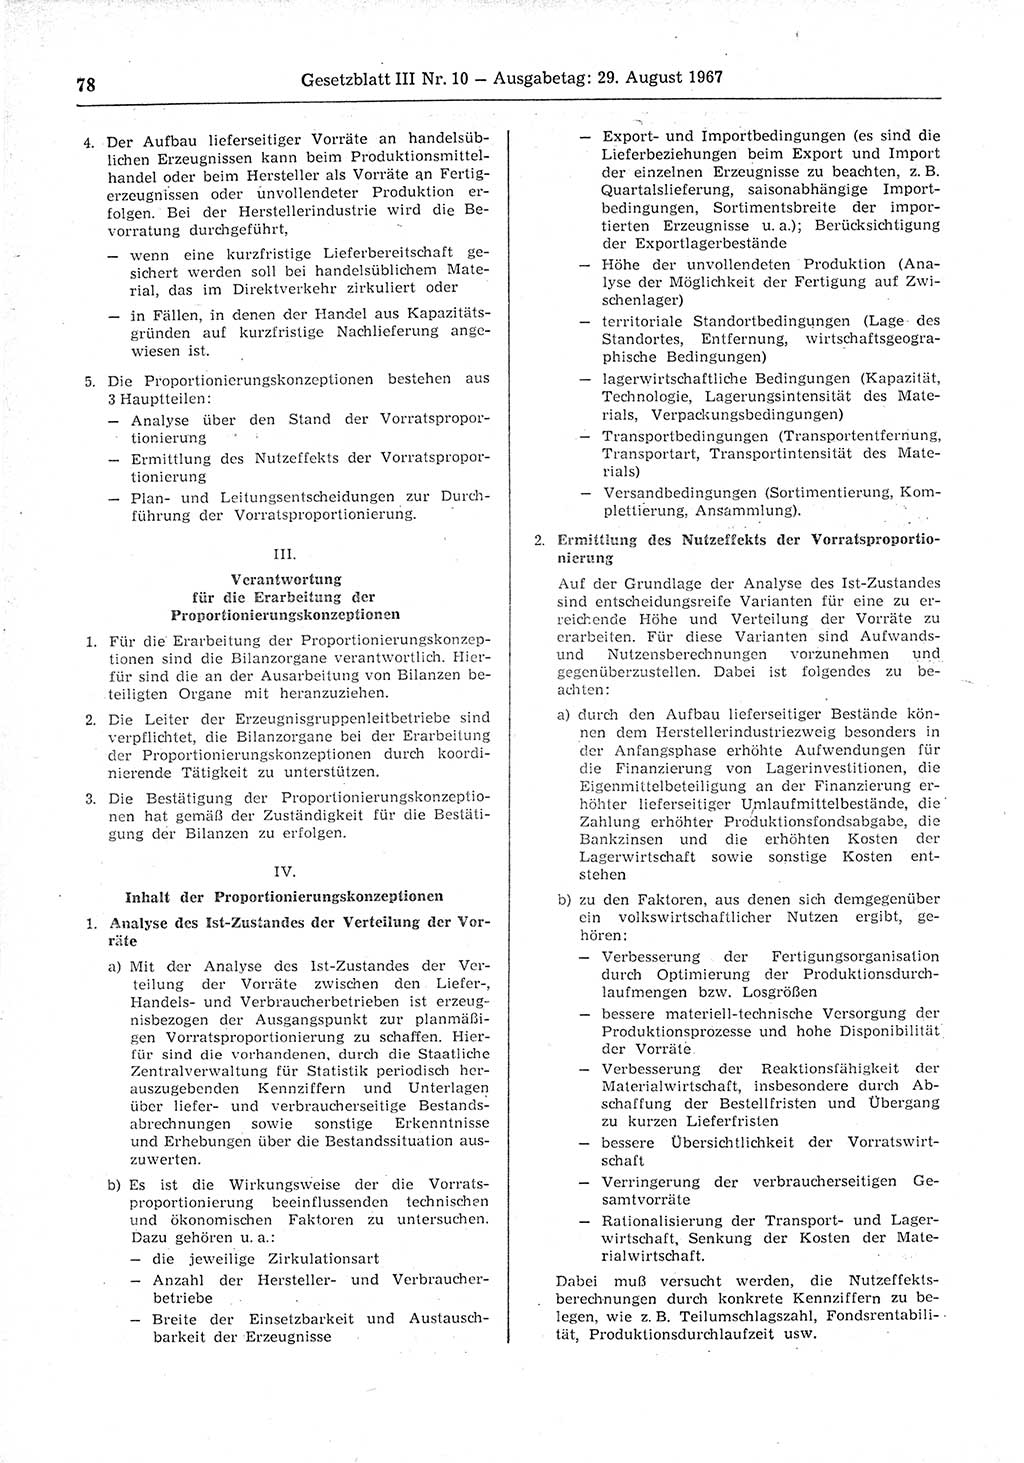 Gesetzblatt (GBl.) der Deutschen Demokratischen Republik (DDR) Teil ⅠⅠⅠ 1967, Seite 78 (GBl. DDR ⅠⅠⅠ 1967, S. 78)